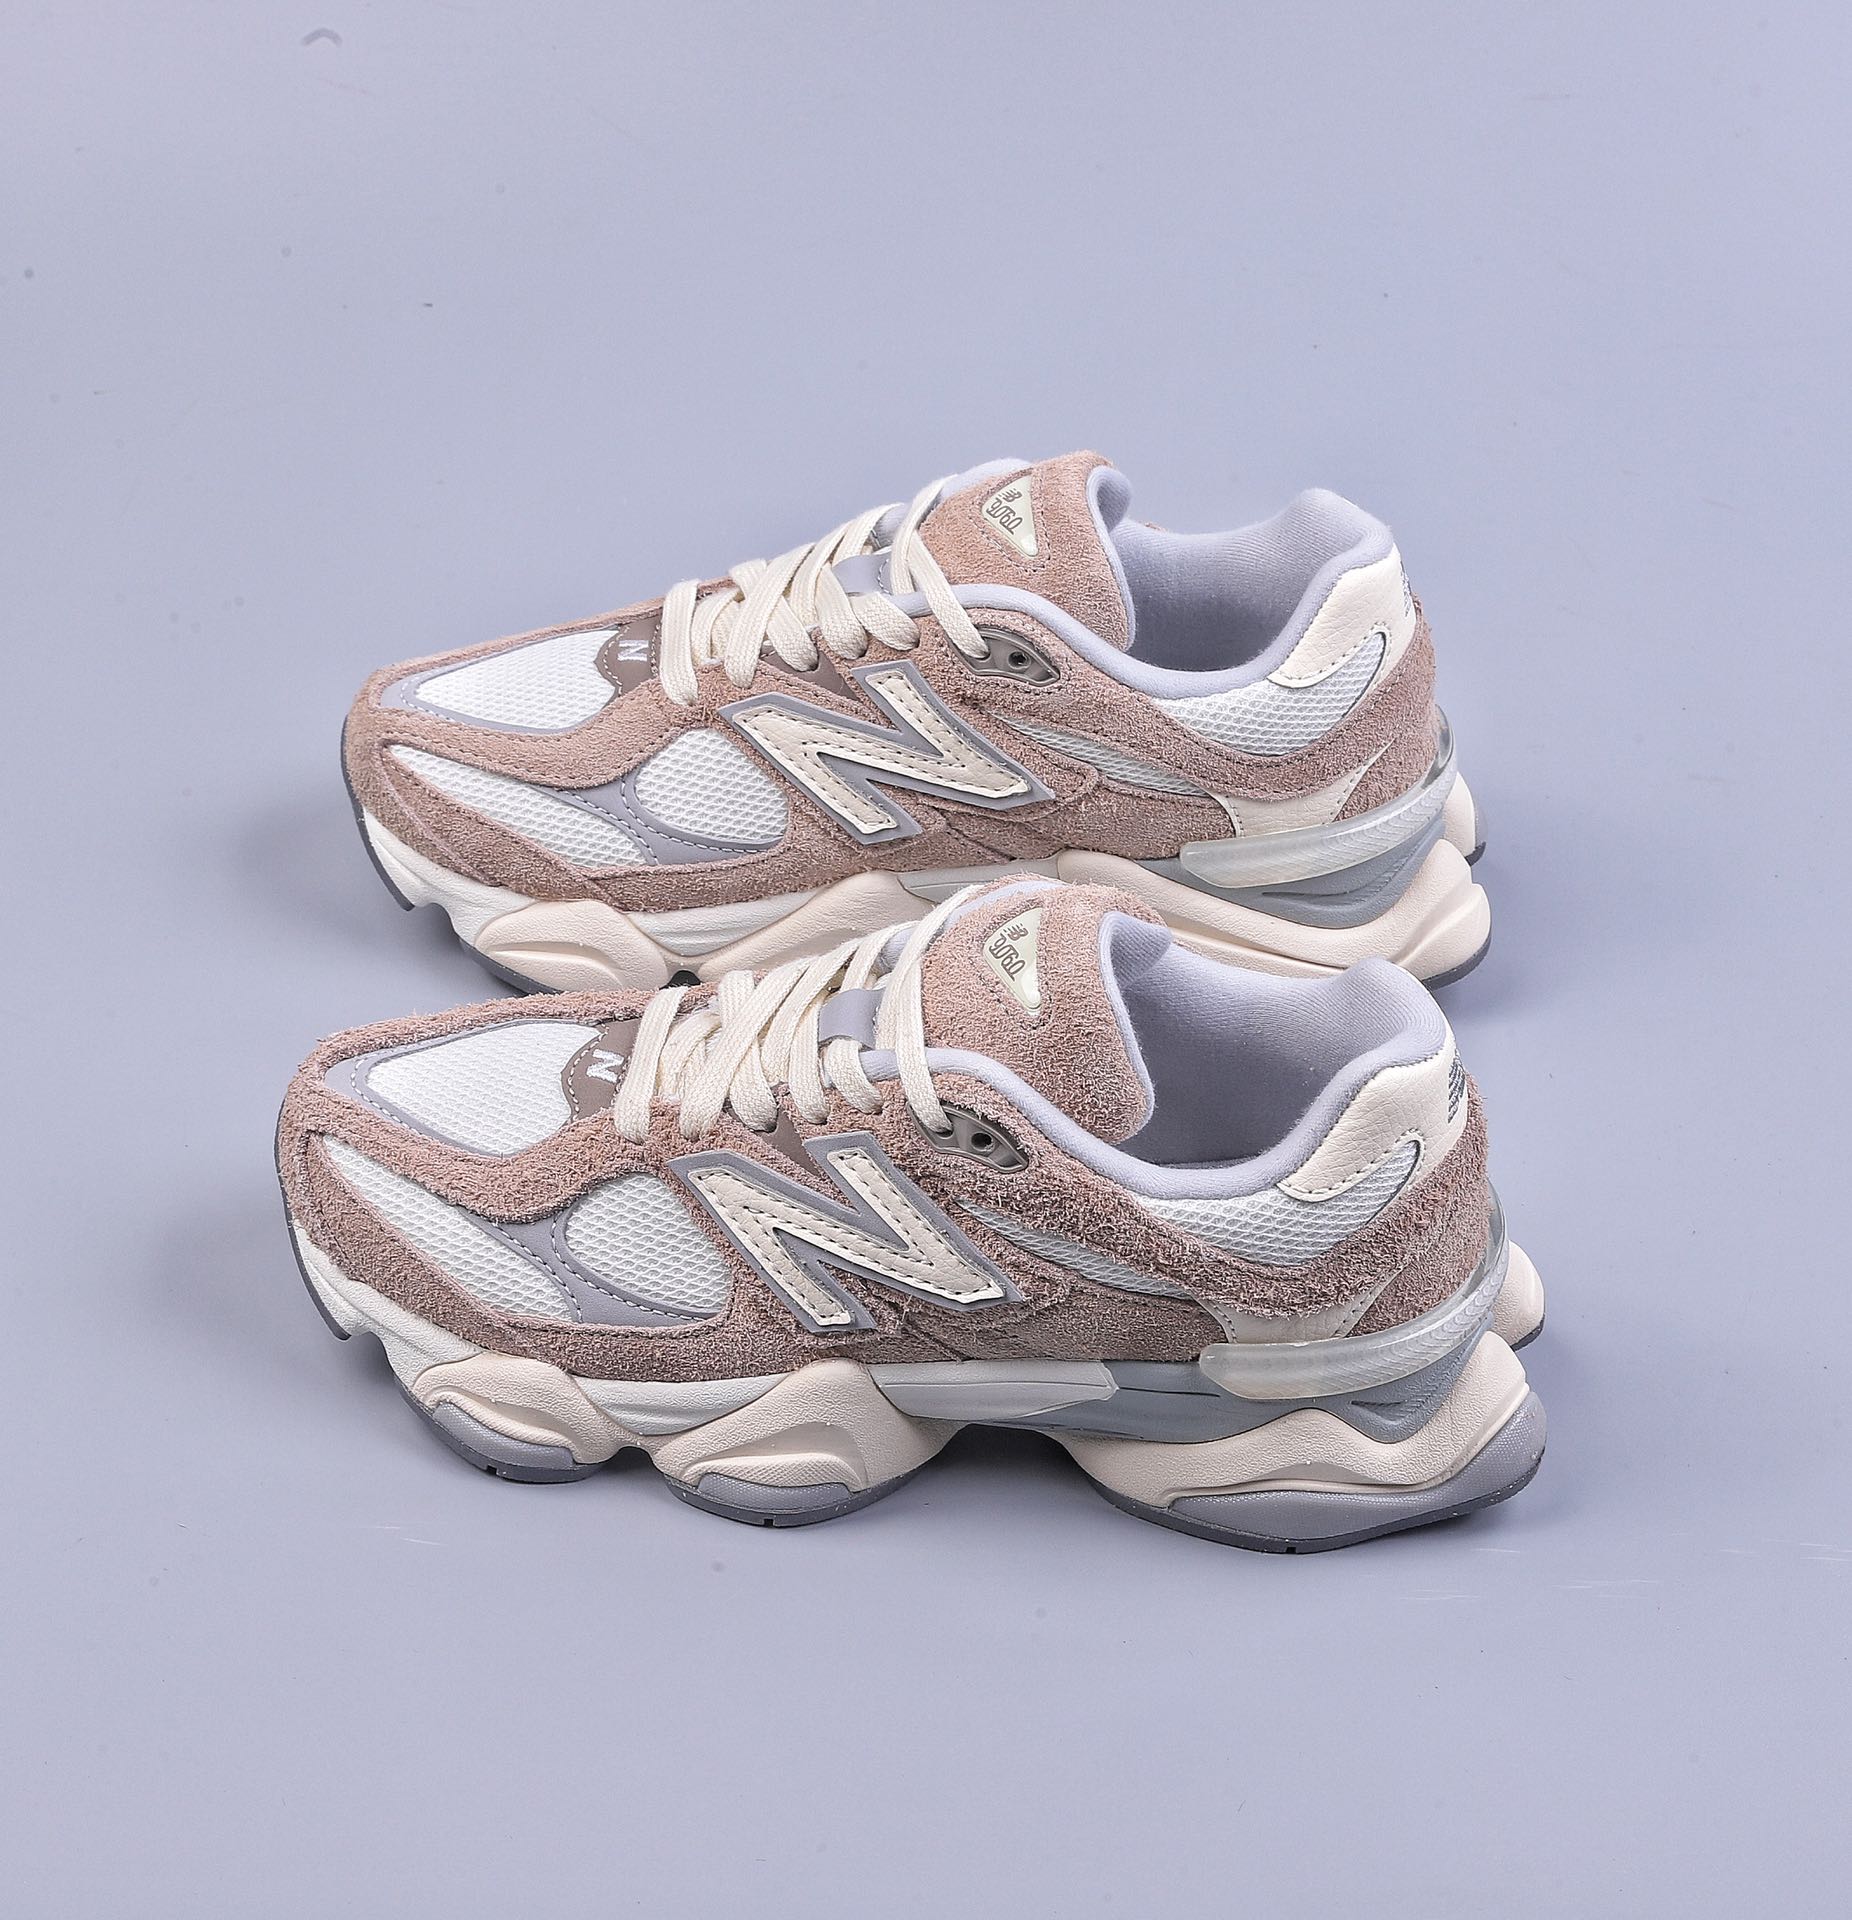 Joe Freshgoods x New Balance NB9060 joint jogging shoes U9060HSB